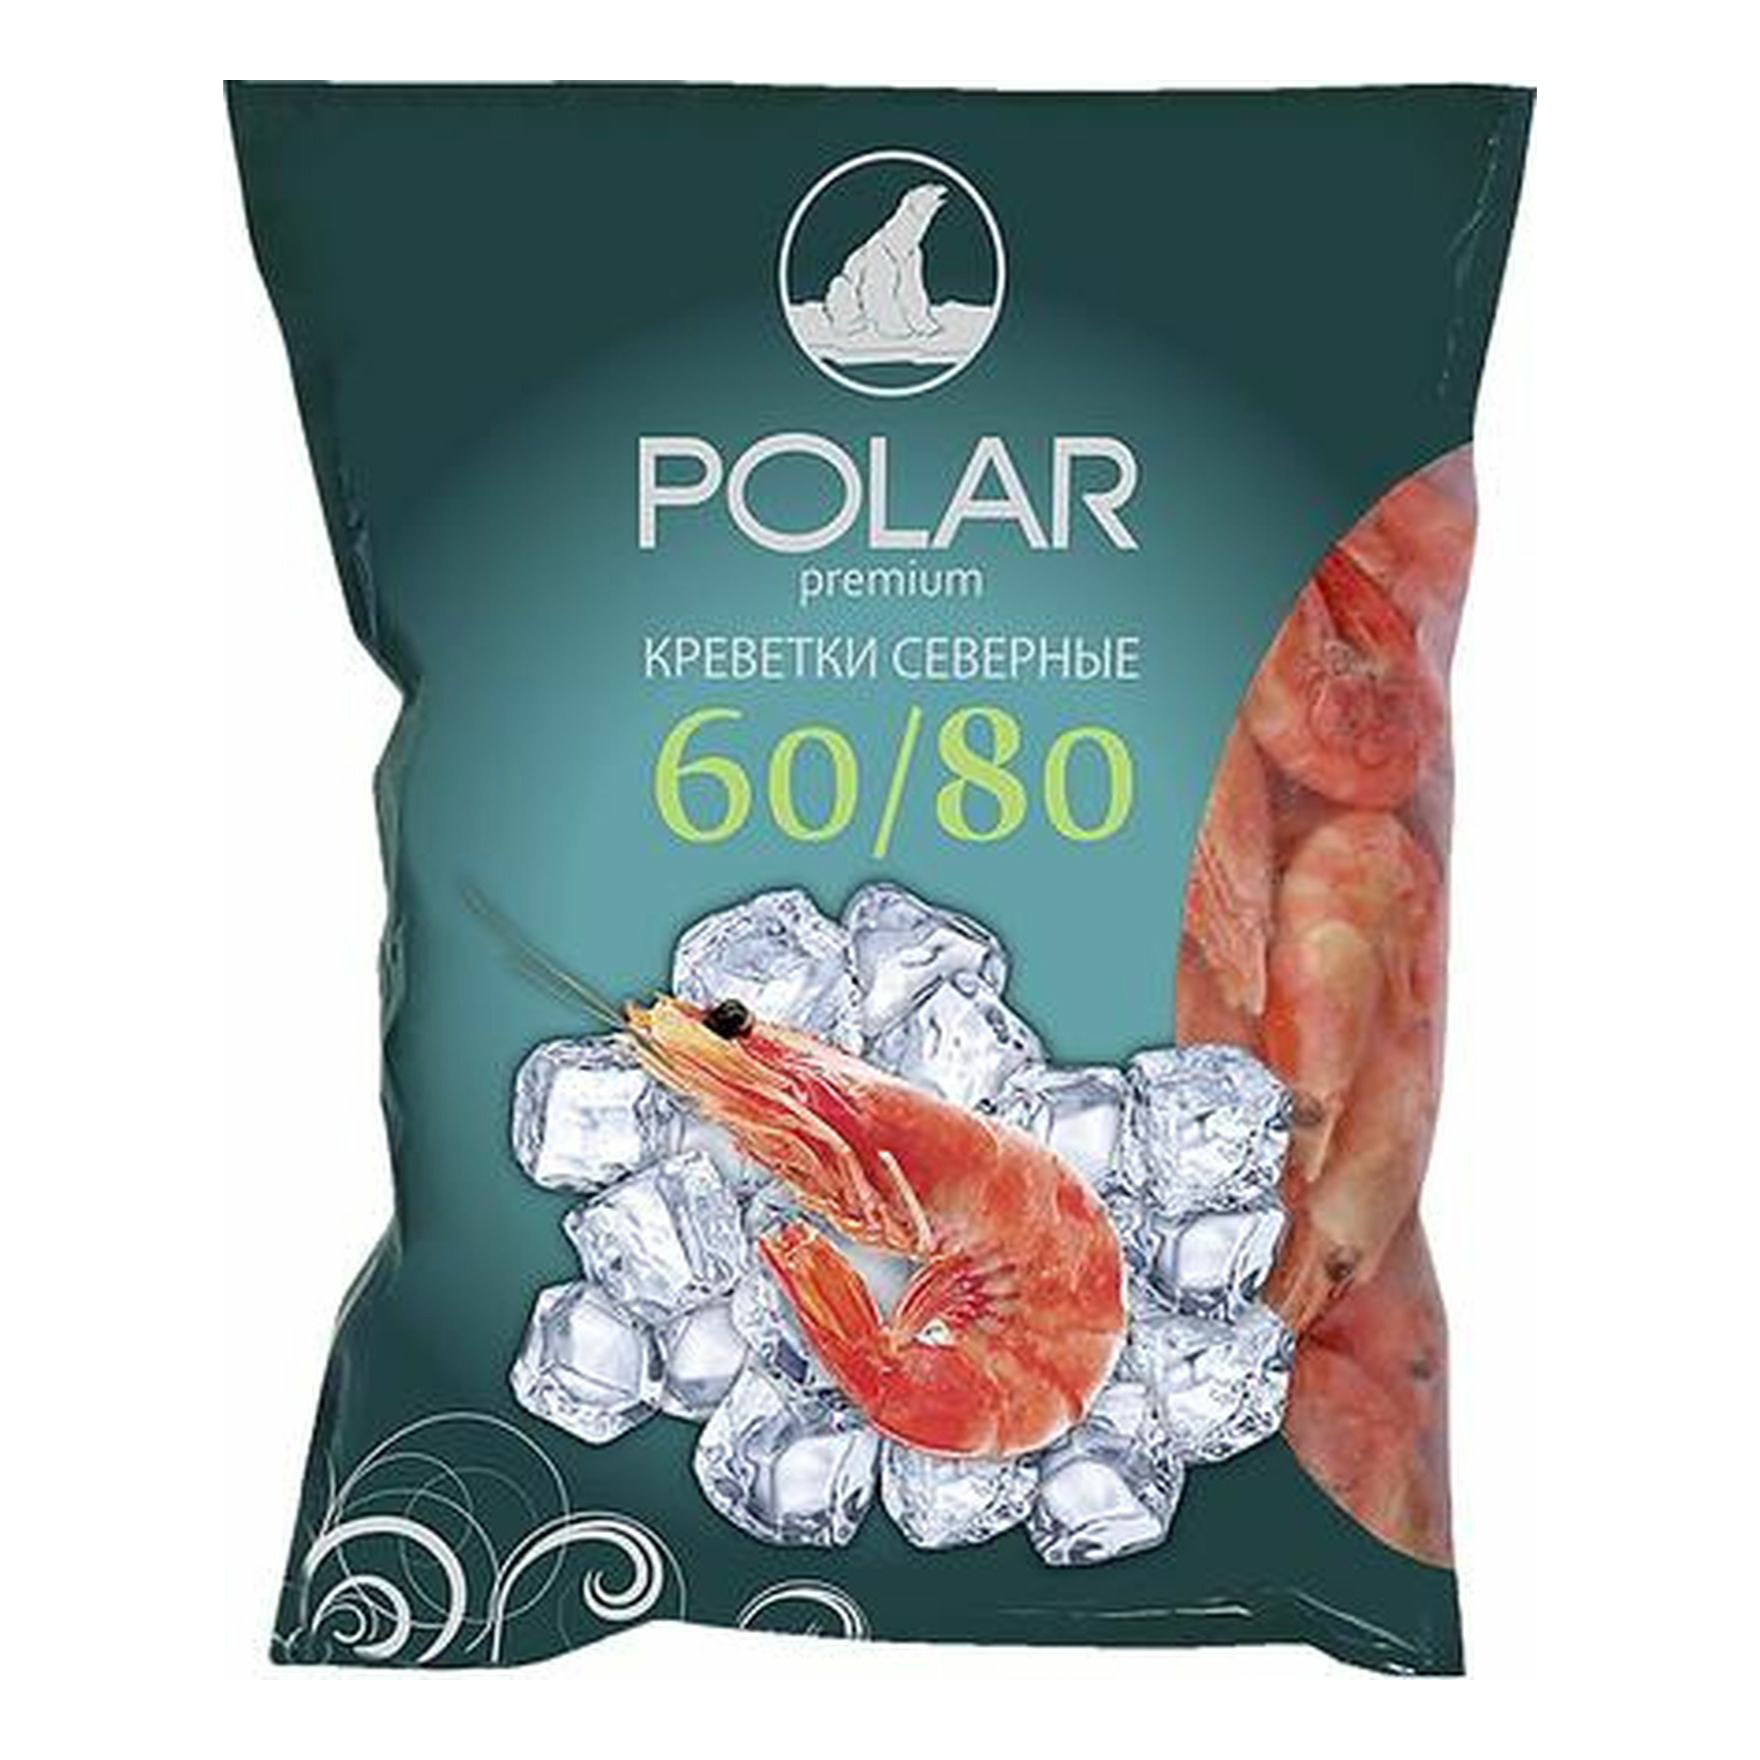 Креветки Polar Premium 60/80 северные вареные замороженные 2 кг - купить в METRO - СберМаркет, цена на Мегамаркет